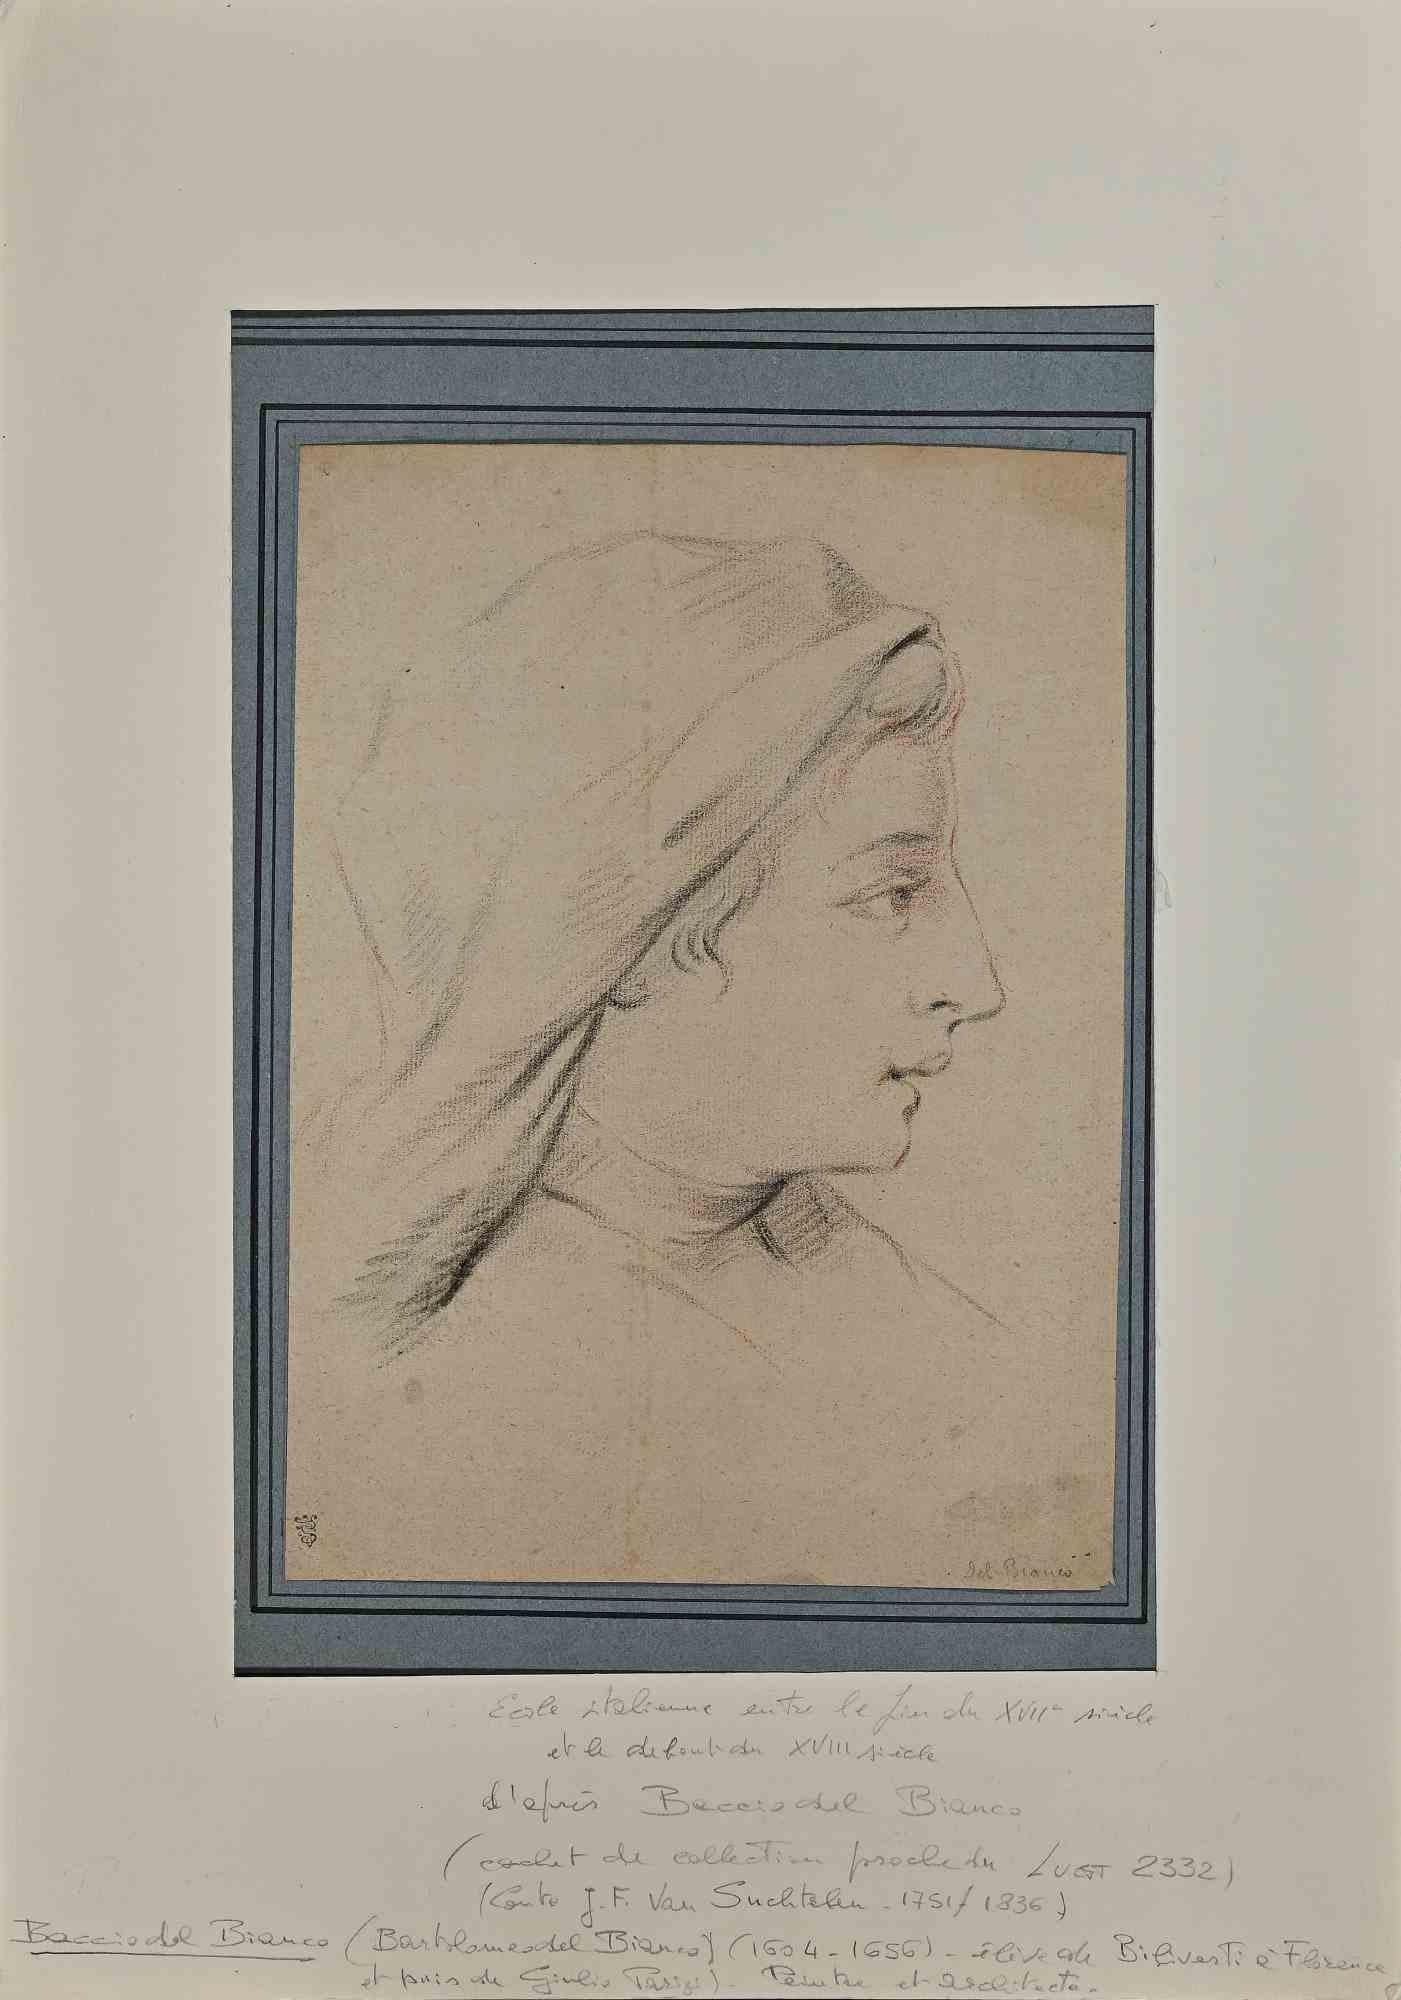 Das Porträt ist eine Bleistiftzeichnung eines italienischen Künstlers des 17. und frühen 18. Jahrhunderts, nach Baccio del Bianco (1604-1656).

Guter Zustand auf vergilbtem Papier mit einem blauen und cremefarbenen Passepartout aus Karton (50x35